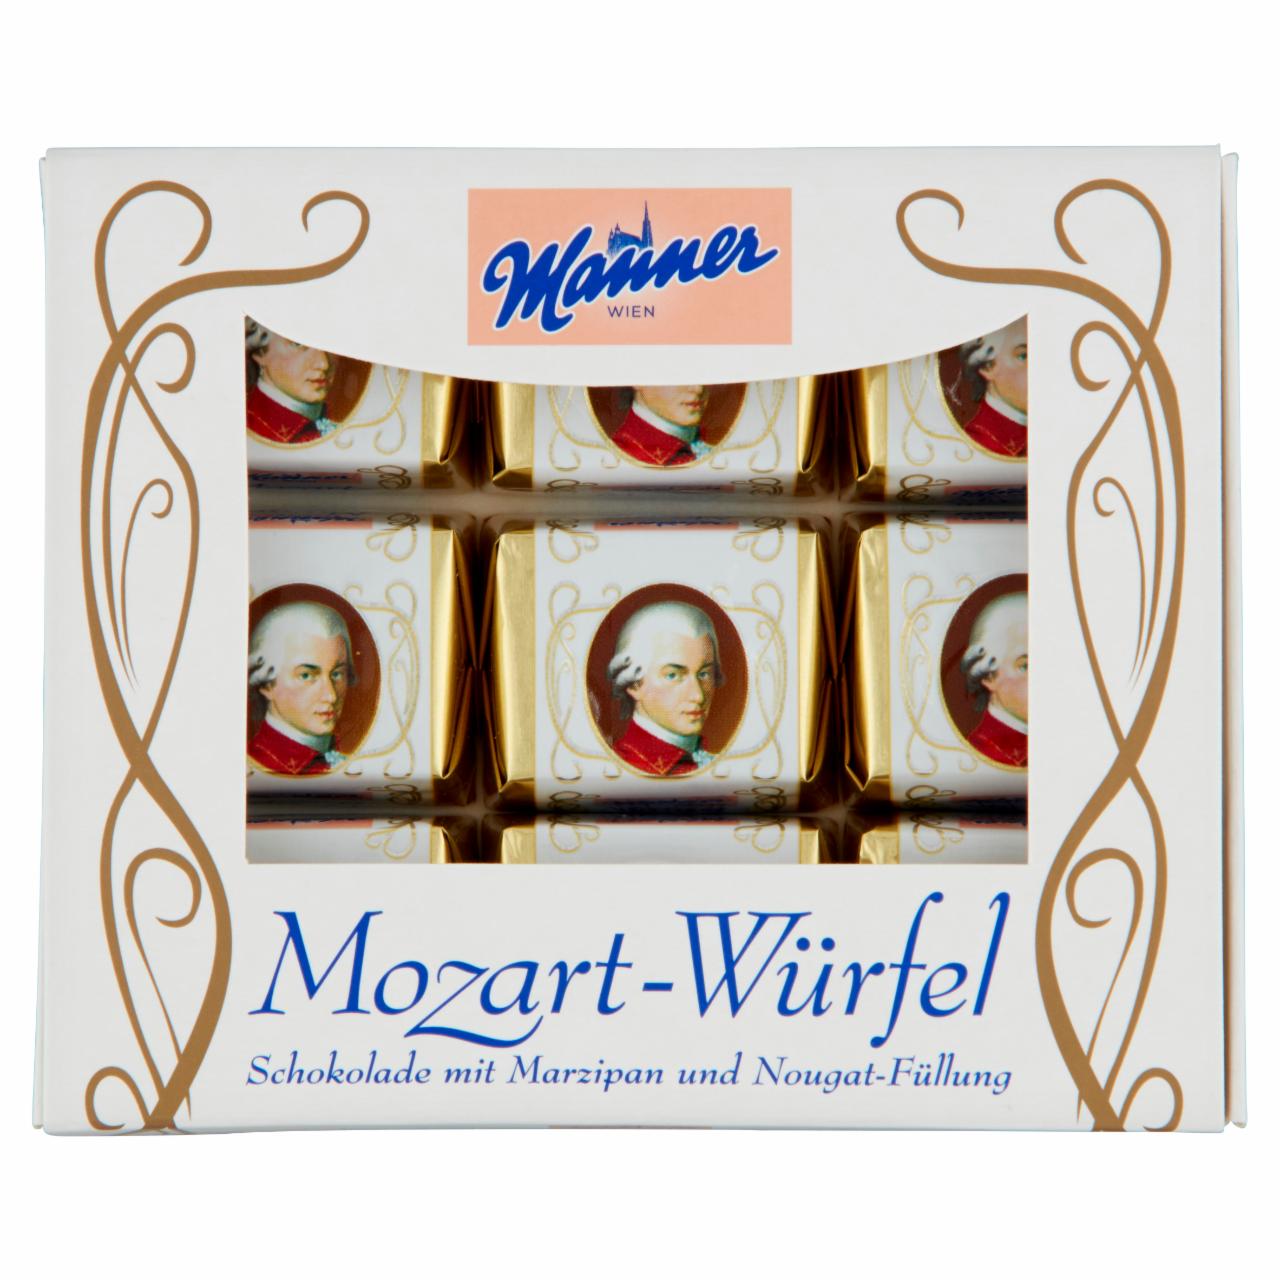 Képek - Manner Mozart kocka csokoládé marcipánnal és nugáttal töltve 118 g